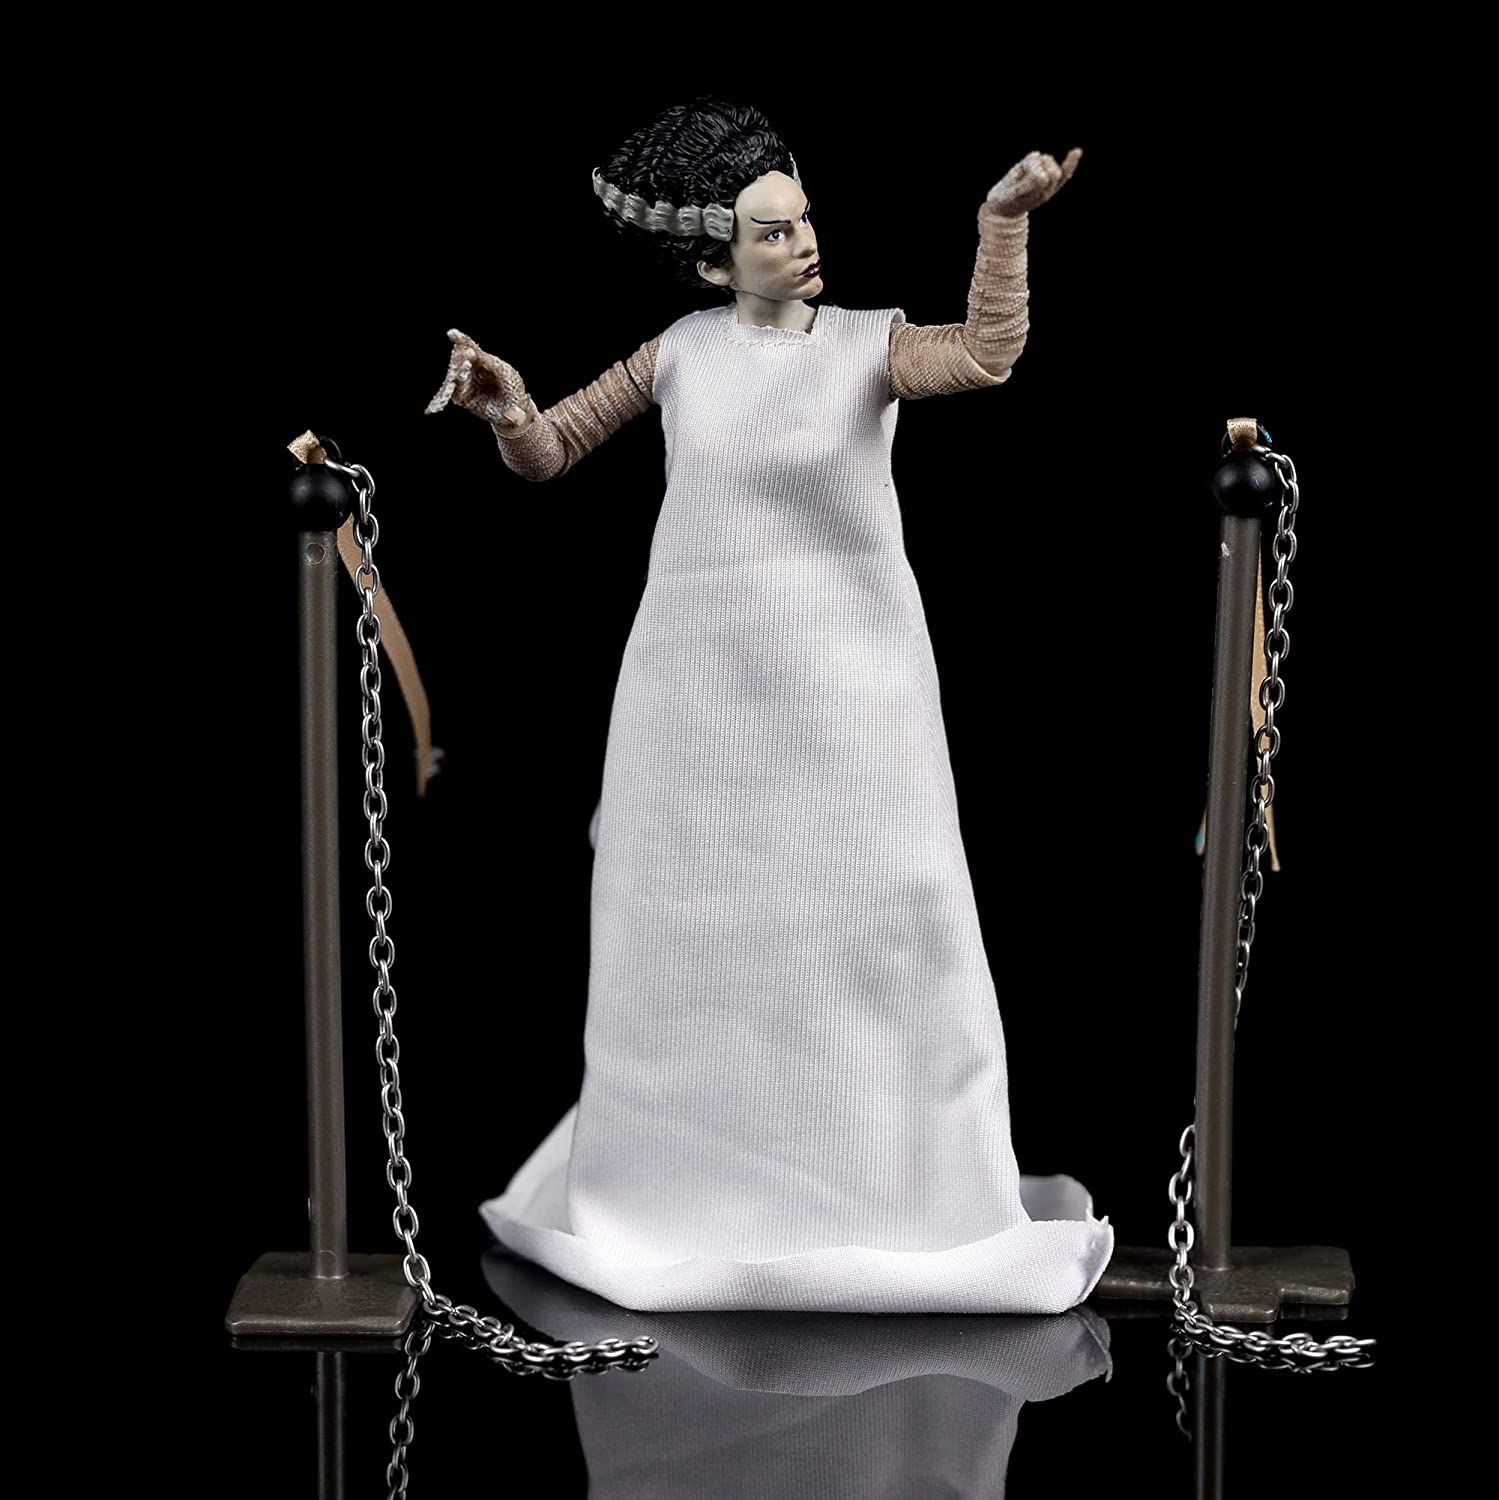 Universal Monsters Bride of Frankenstein 6" Figure